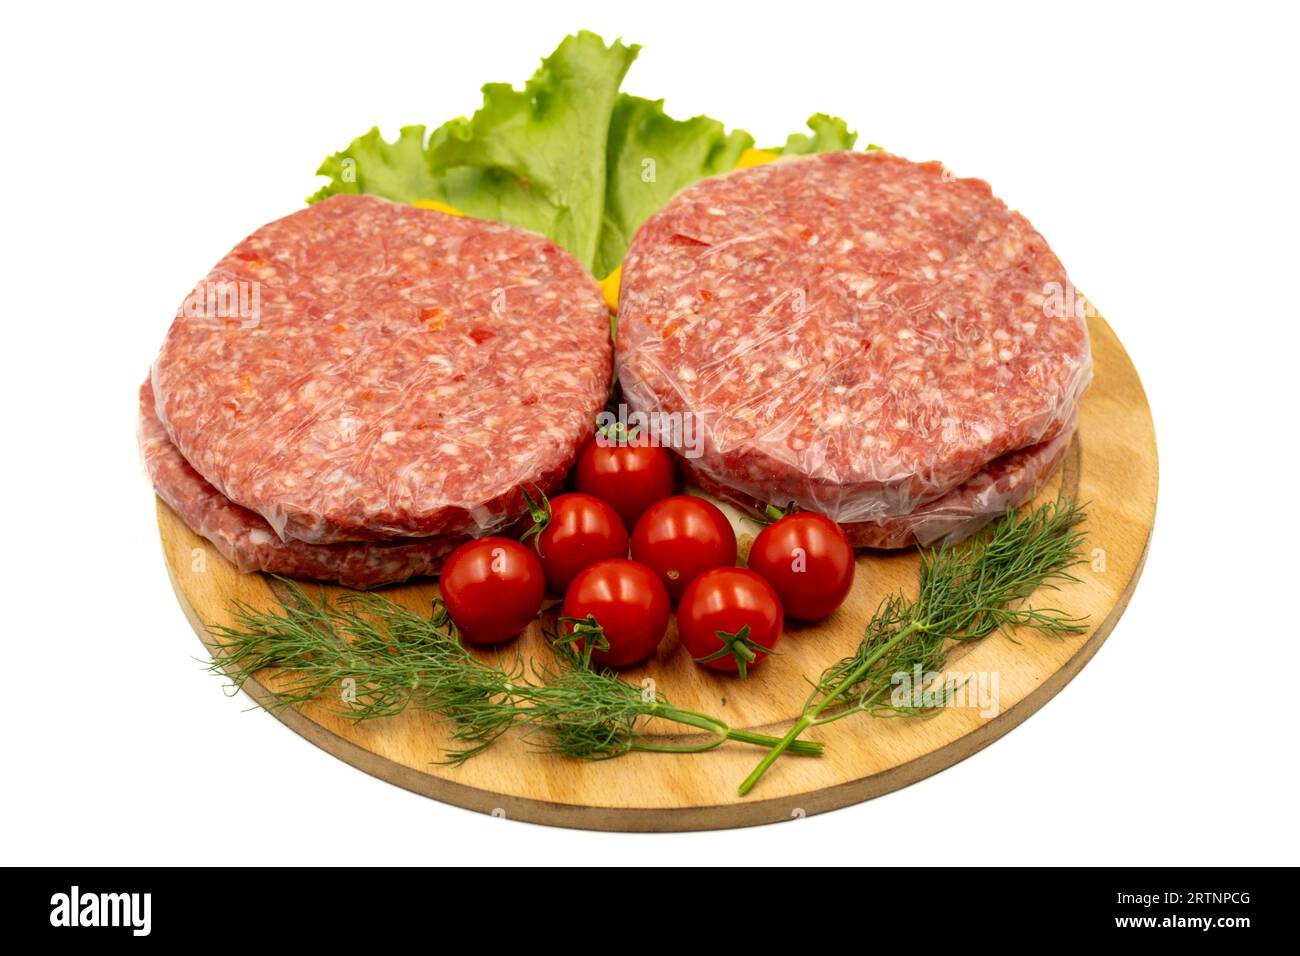 Polpetty di hamburger crudo isolato su sfondo bianco. Hamburger crudo di vitello con erbe e spezie. Primo piano Foto Stock